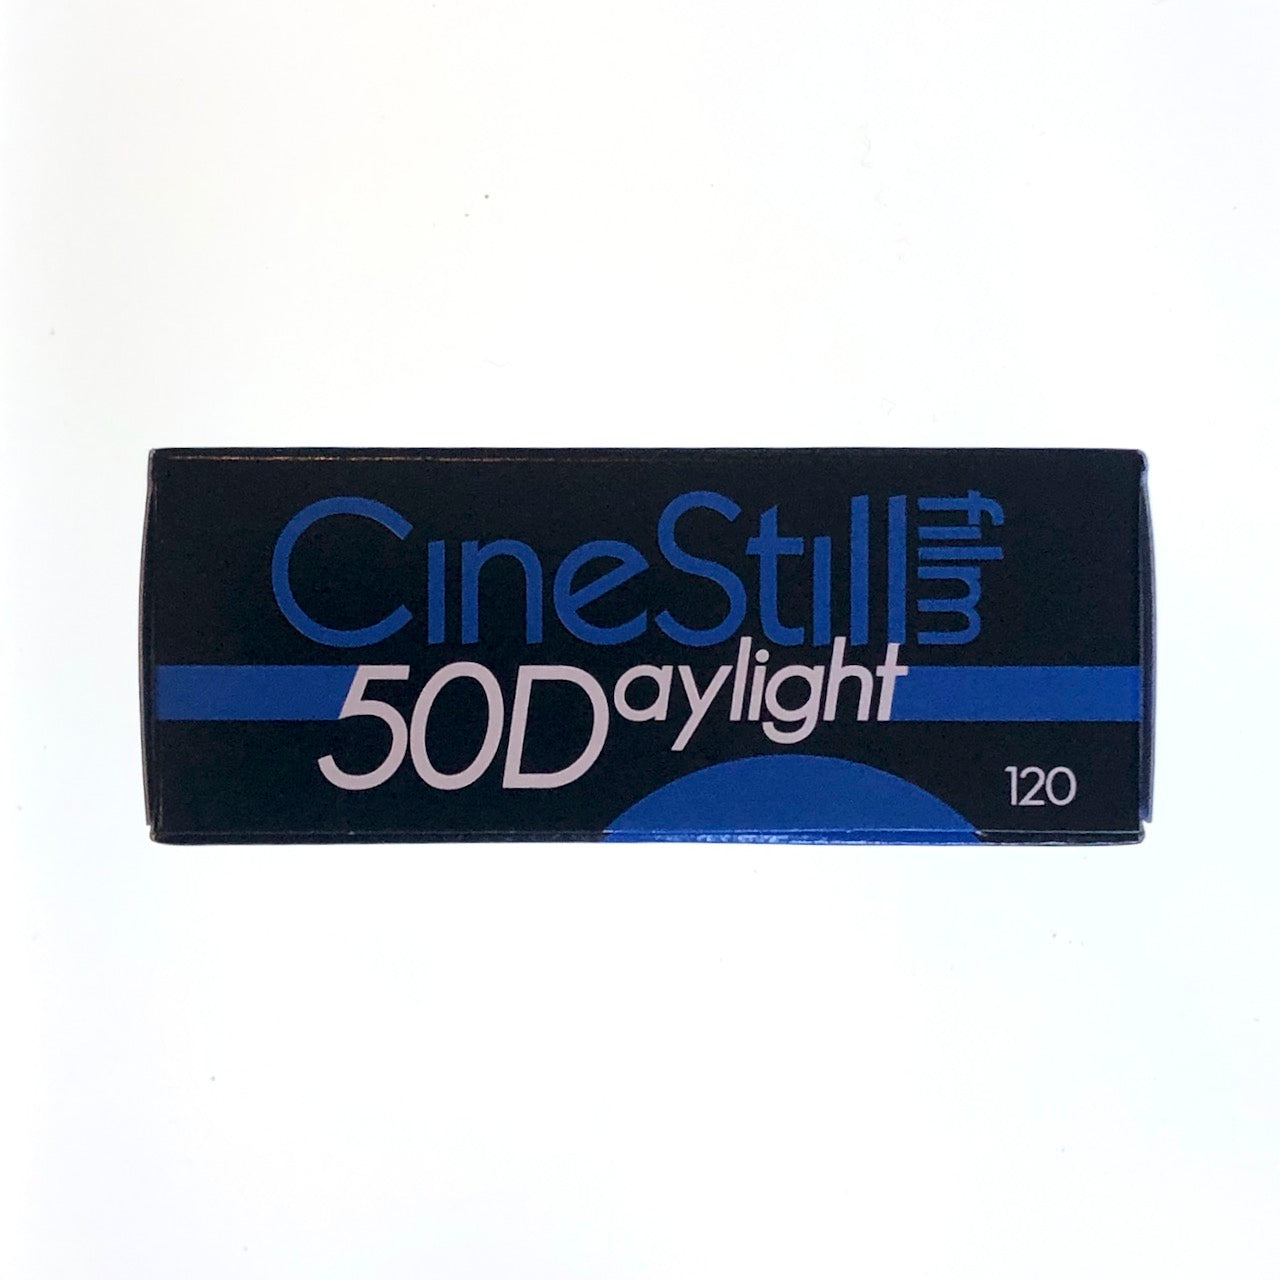 Cinestill 50D 120 XPRO C-41 Daylight Color Film (expired)